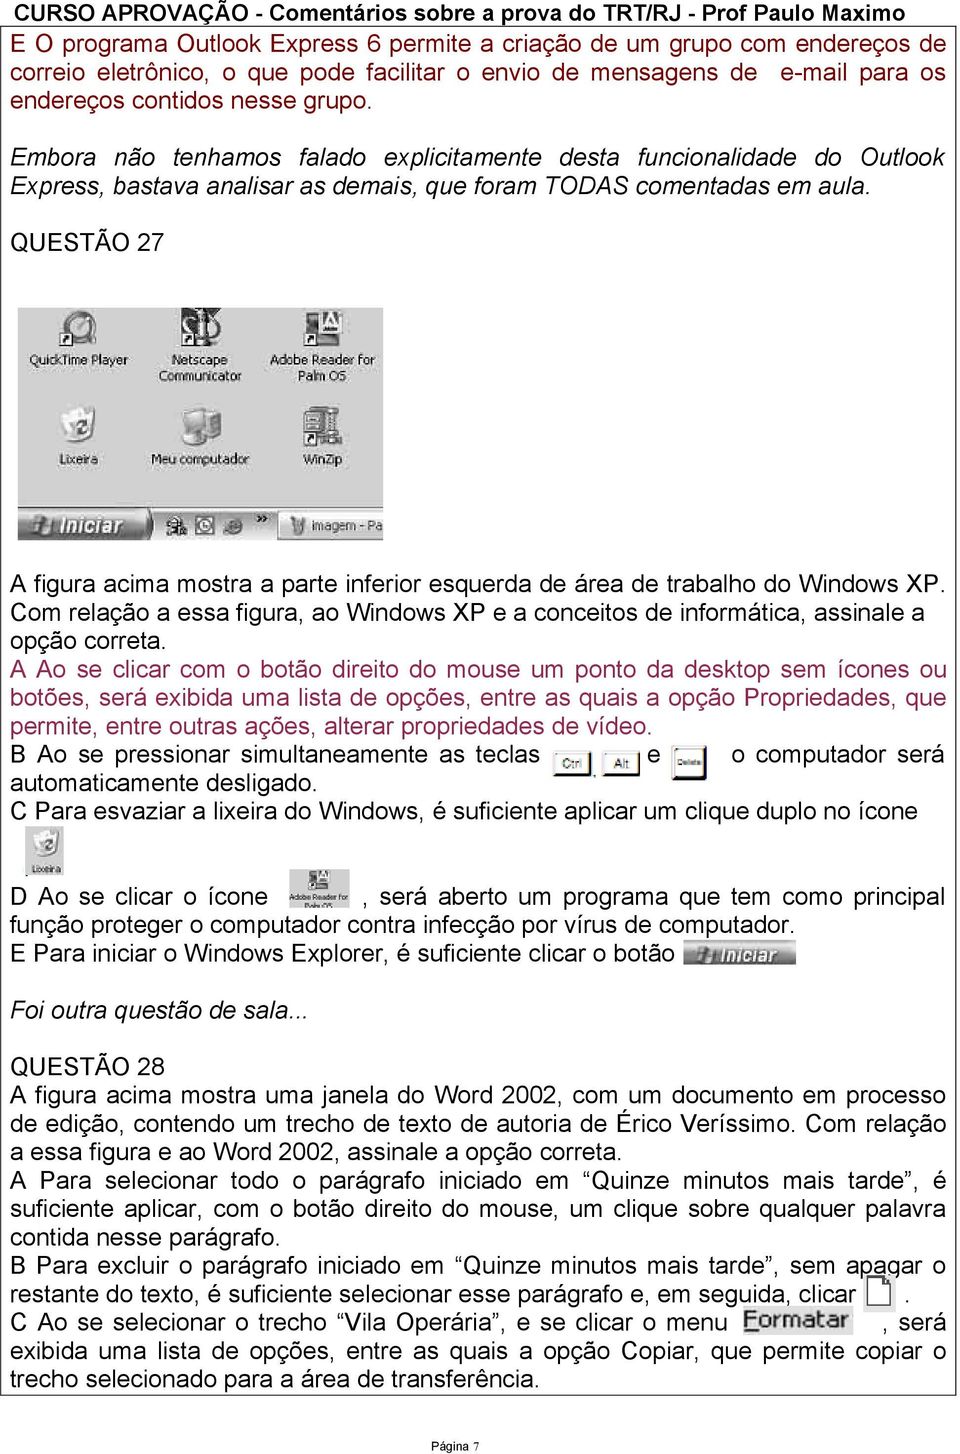 QUESTÃO 27 A figura acima mostra a parte inferior esquerda de área de trabalho do Windows XP. Com relação a essa figura, ao Windows XP e a conceitos de informática, assinale a opção correta.